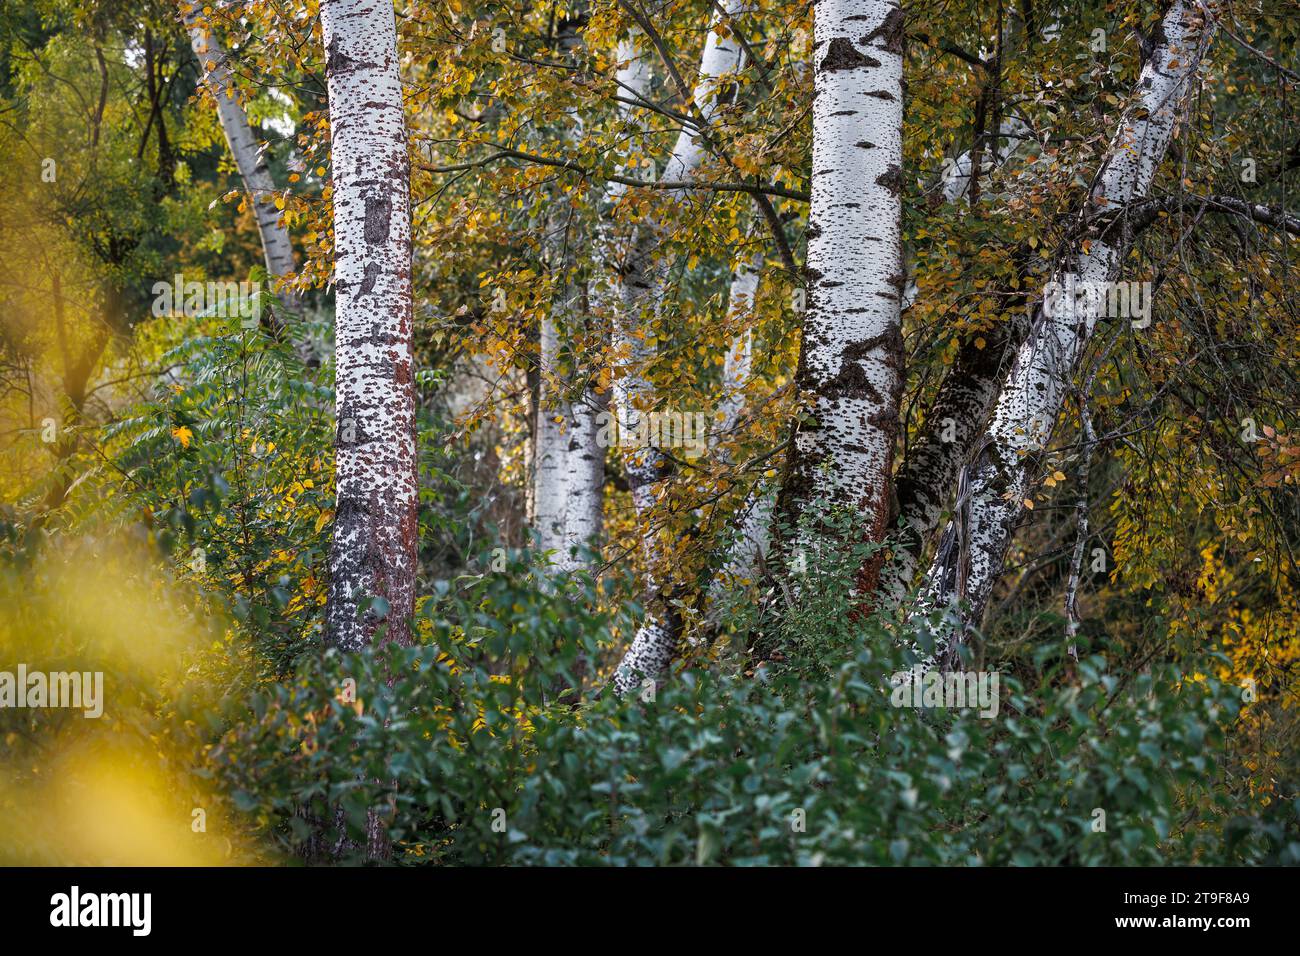 Troncs de bouleau dans la forêt en automne. Feuilles colorées. Saison d'automne nature Banque D'Images